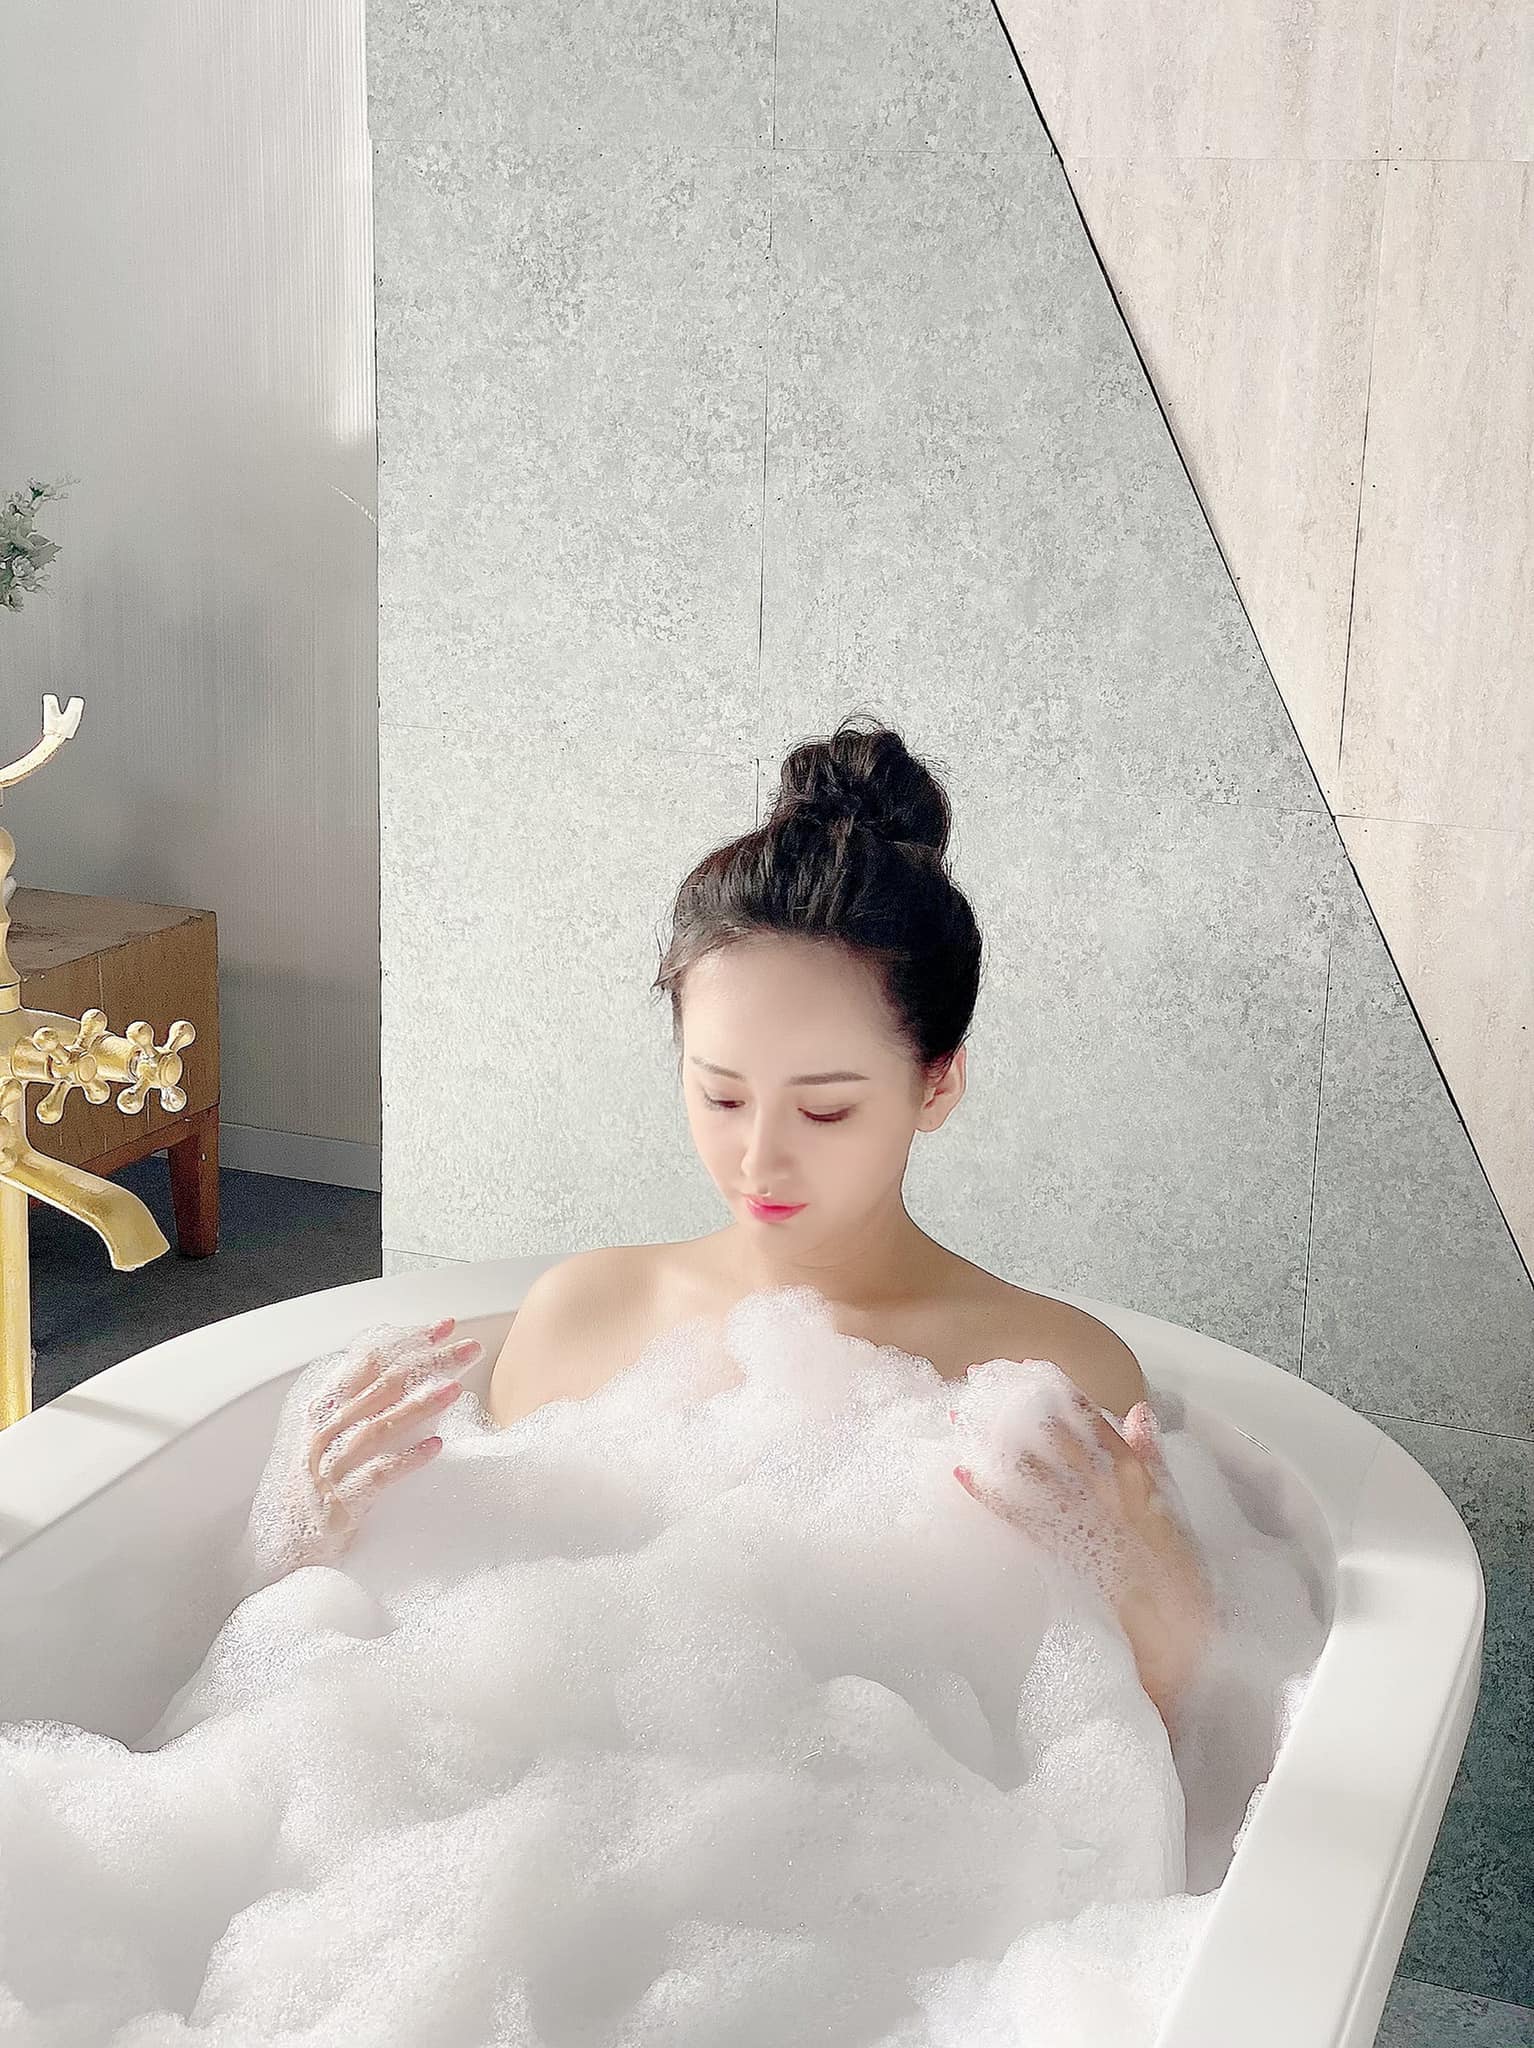 Hoa hậu Mai Phương Thuý gây chú ý với bức ảnh bán nude trong bồn tắm, dù không phô phang cơ thể nhưng vẫn vô cùng gợi cảm.